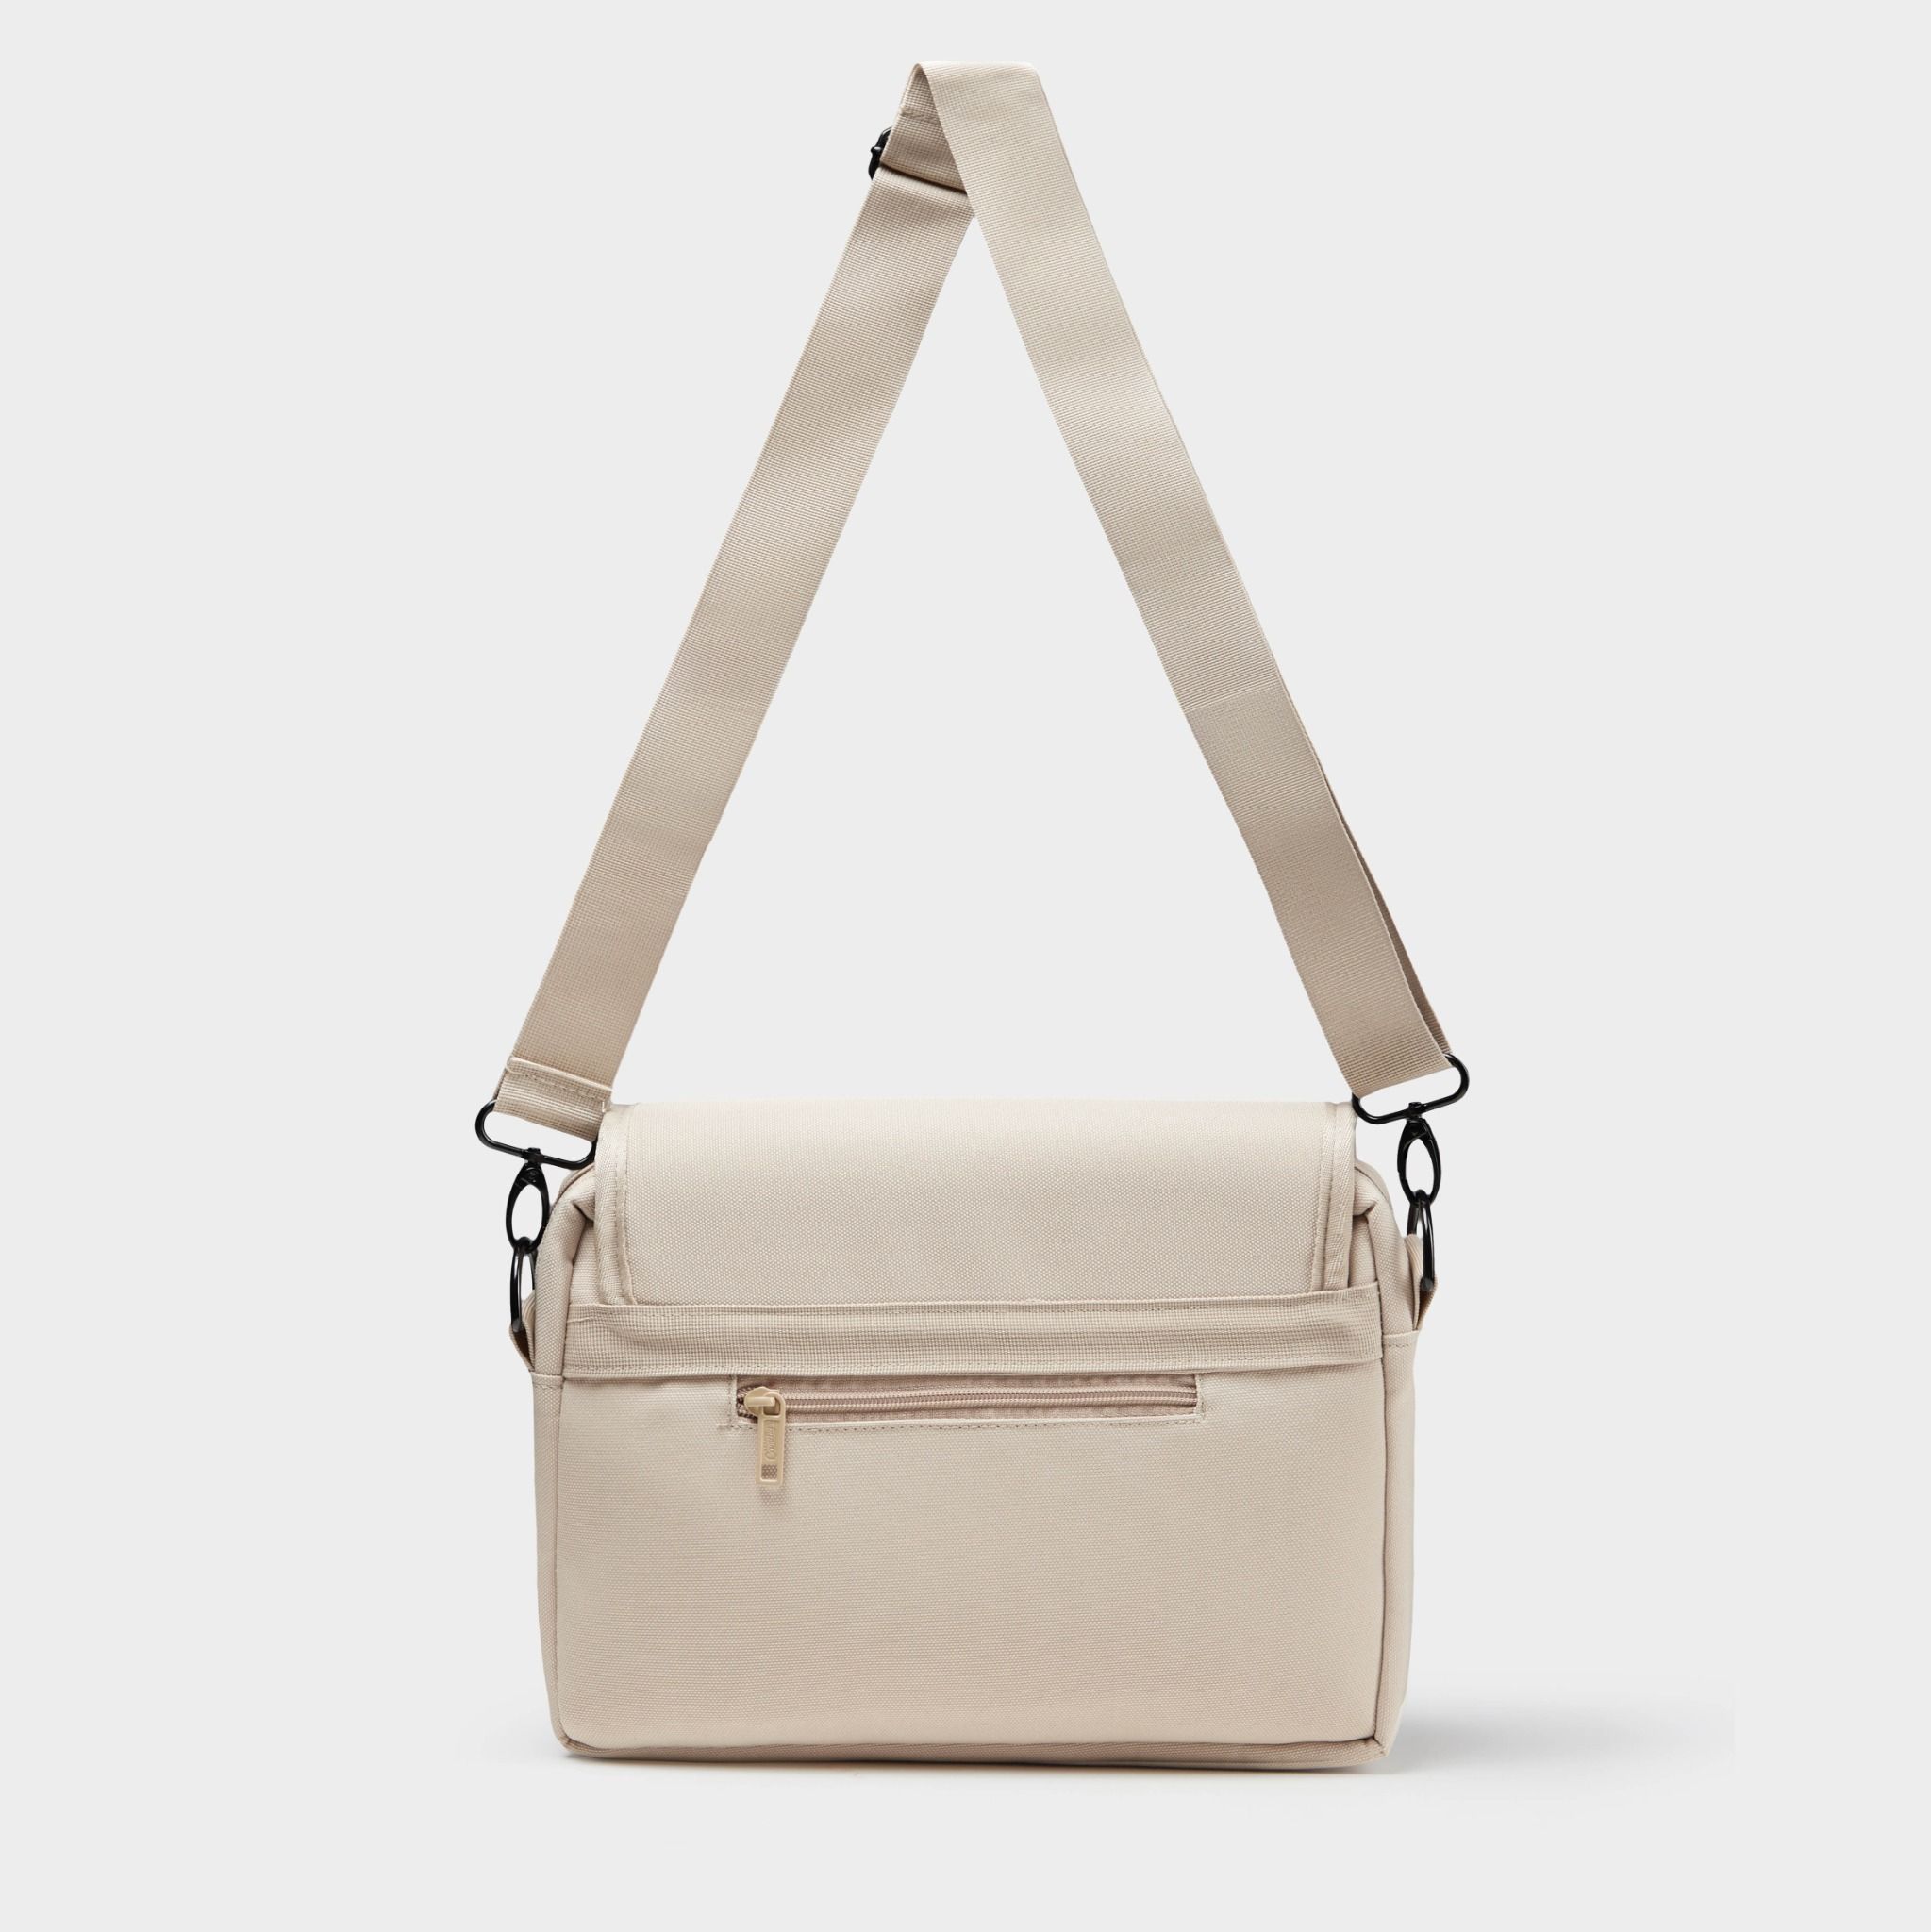 How to Choose Right Fashion Bags 2020 - Diana's Women Blog | Trendy purses,  Women handbags, Fancy bags